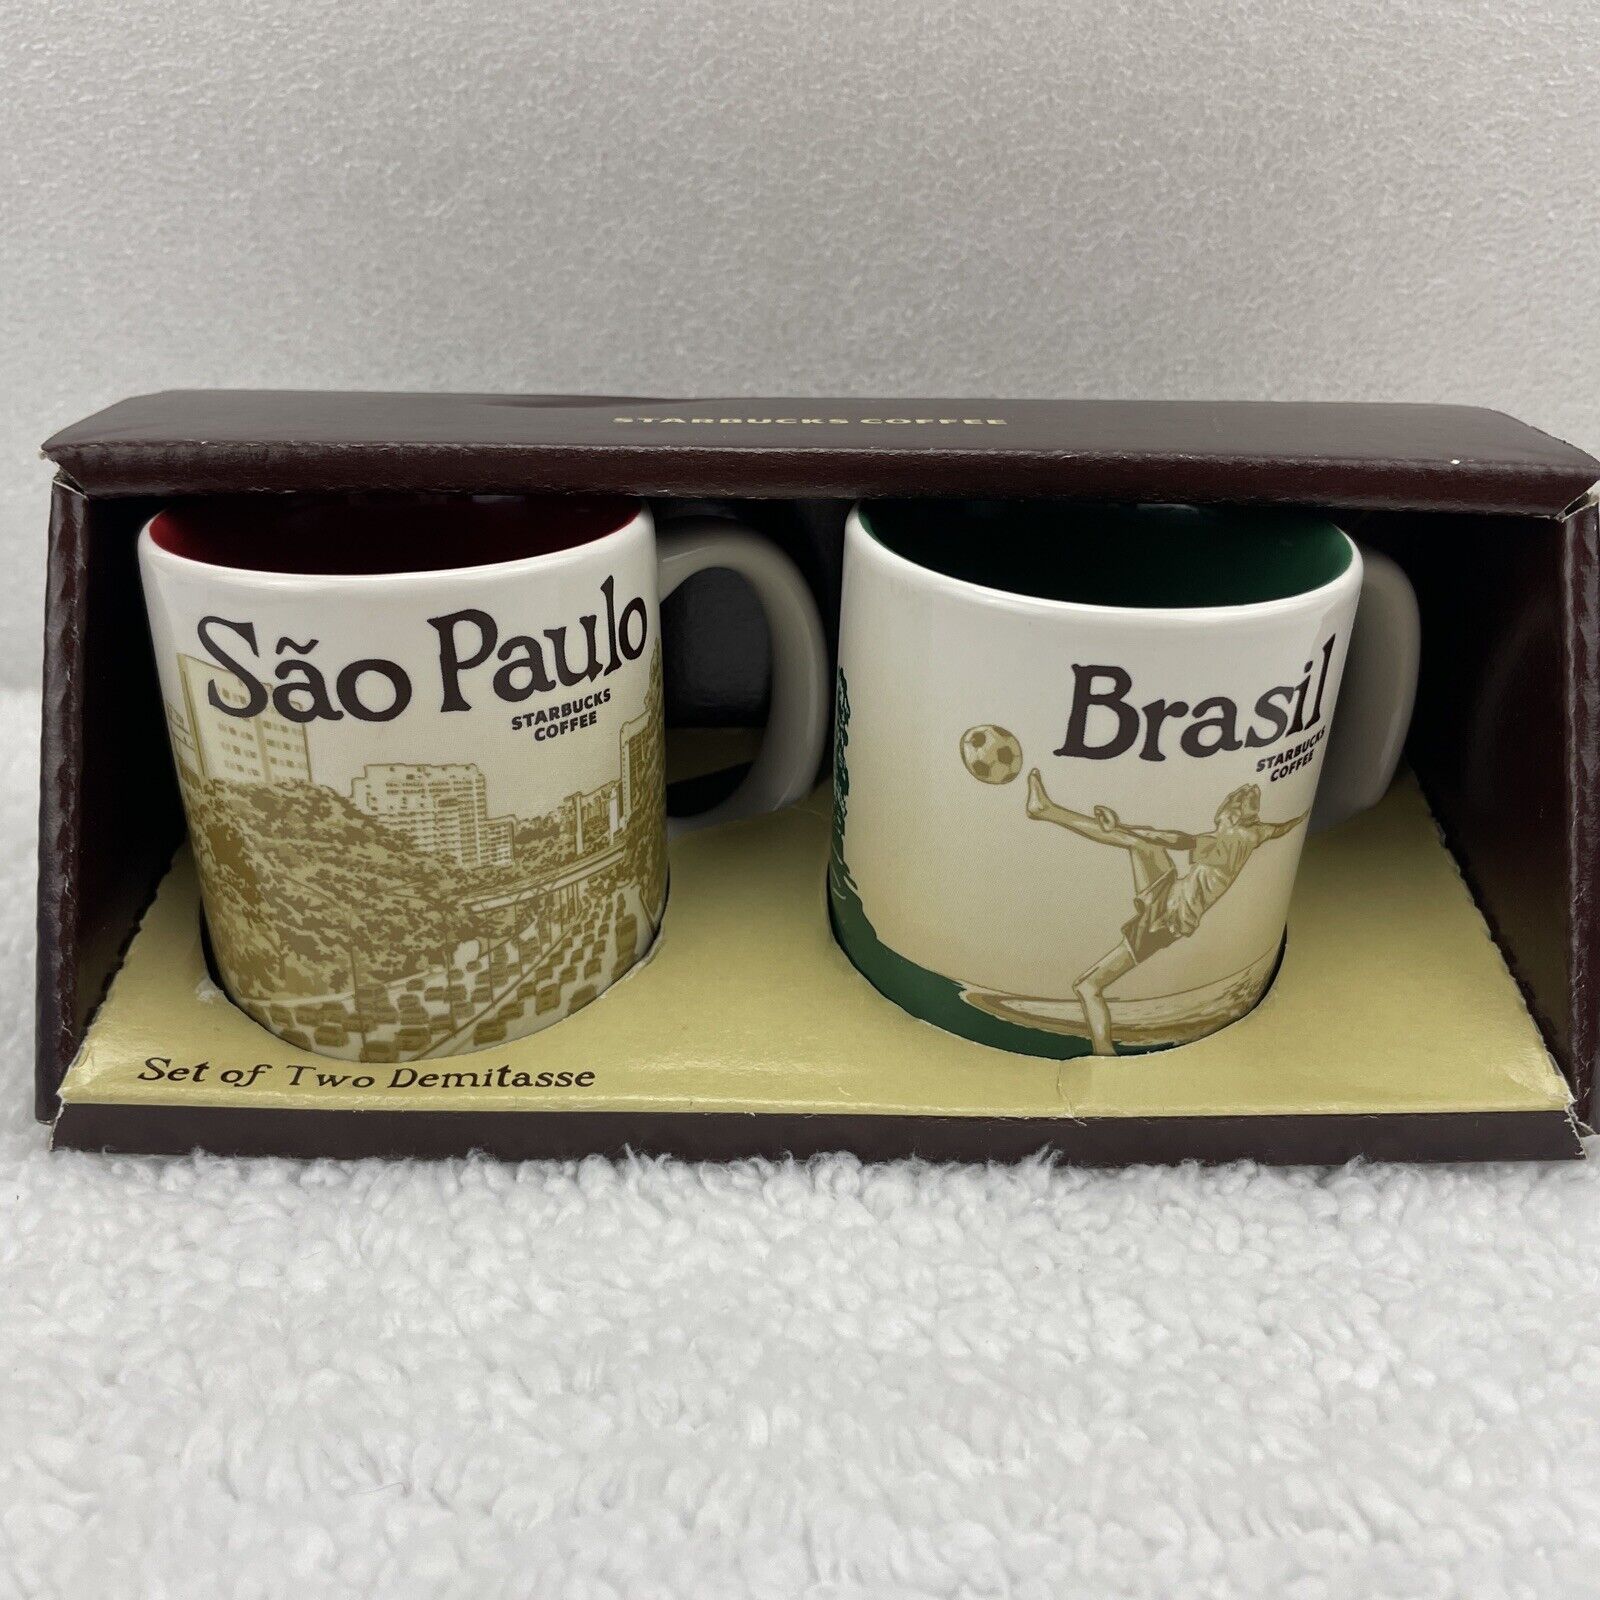 Starbucks Coffee Sao Paulo and Brasil 3 Oz Demitasse Espresso Mug Set